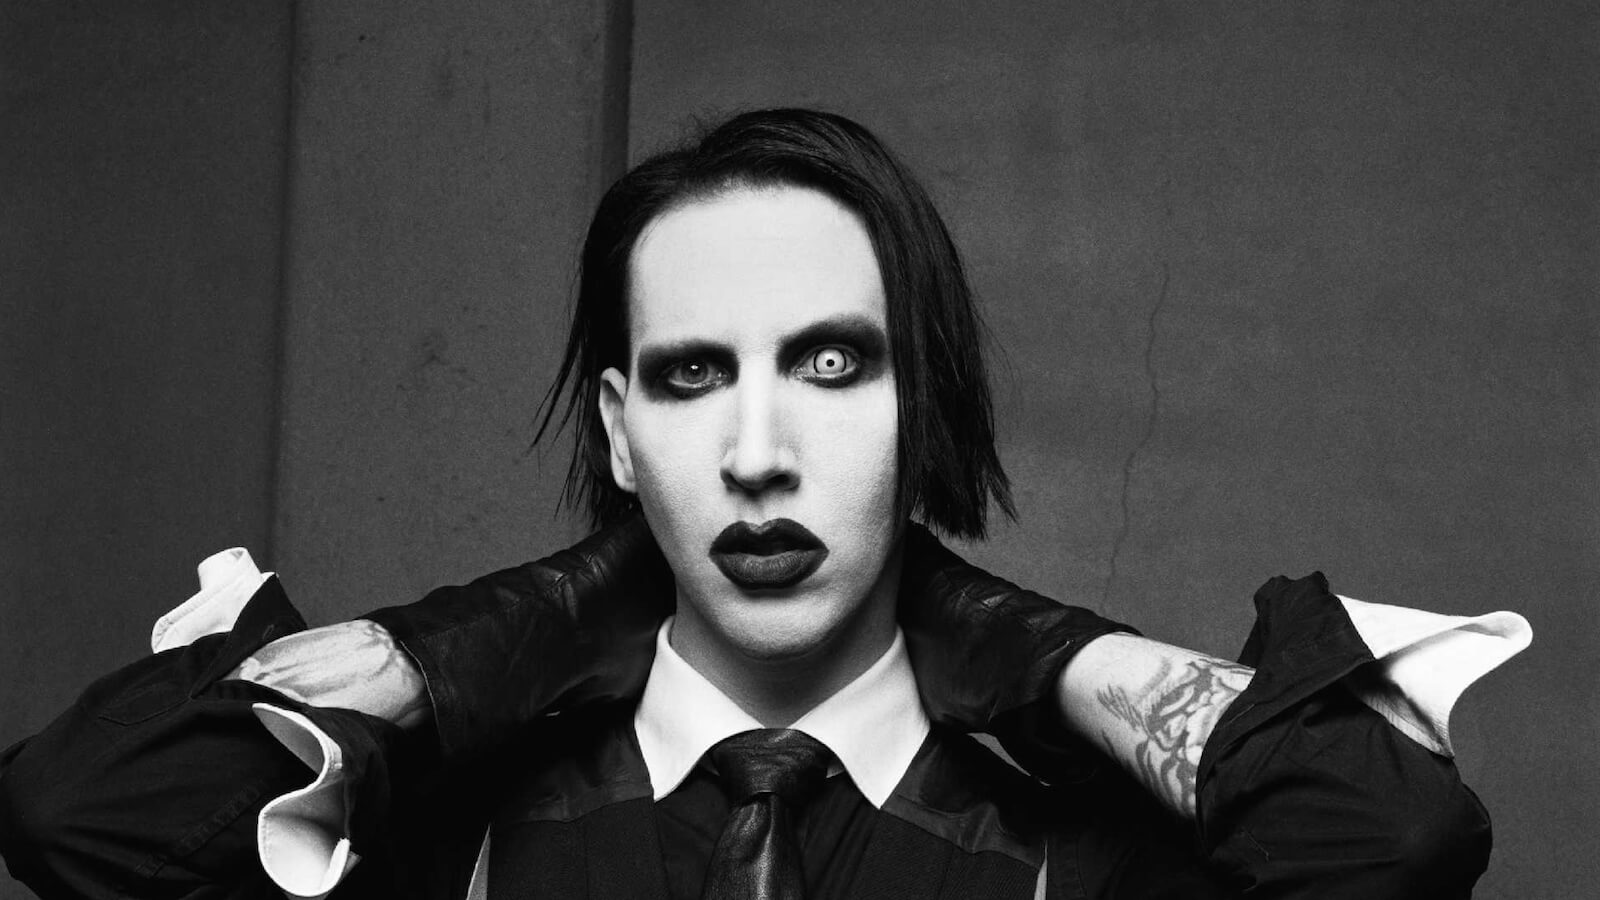 Marilyn Manson ospite di Music, l'esorcista: "Boicottatelo" - marilyn manson 4 - Gay.it